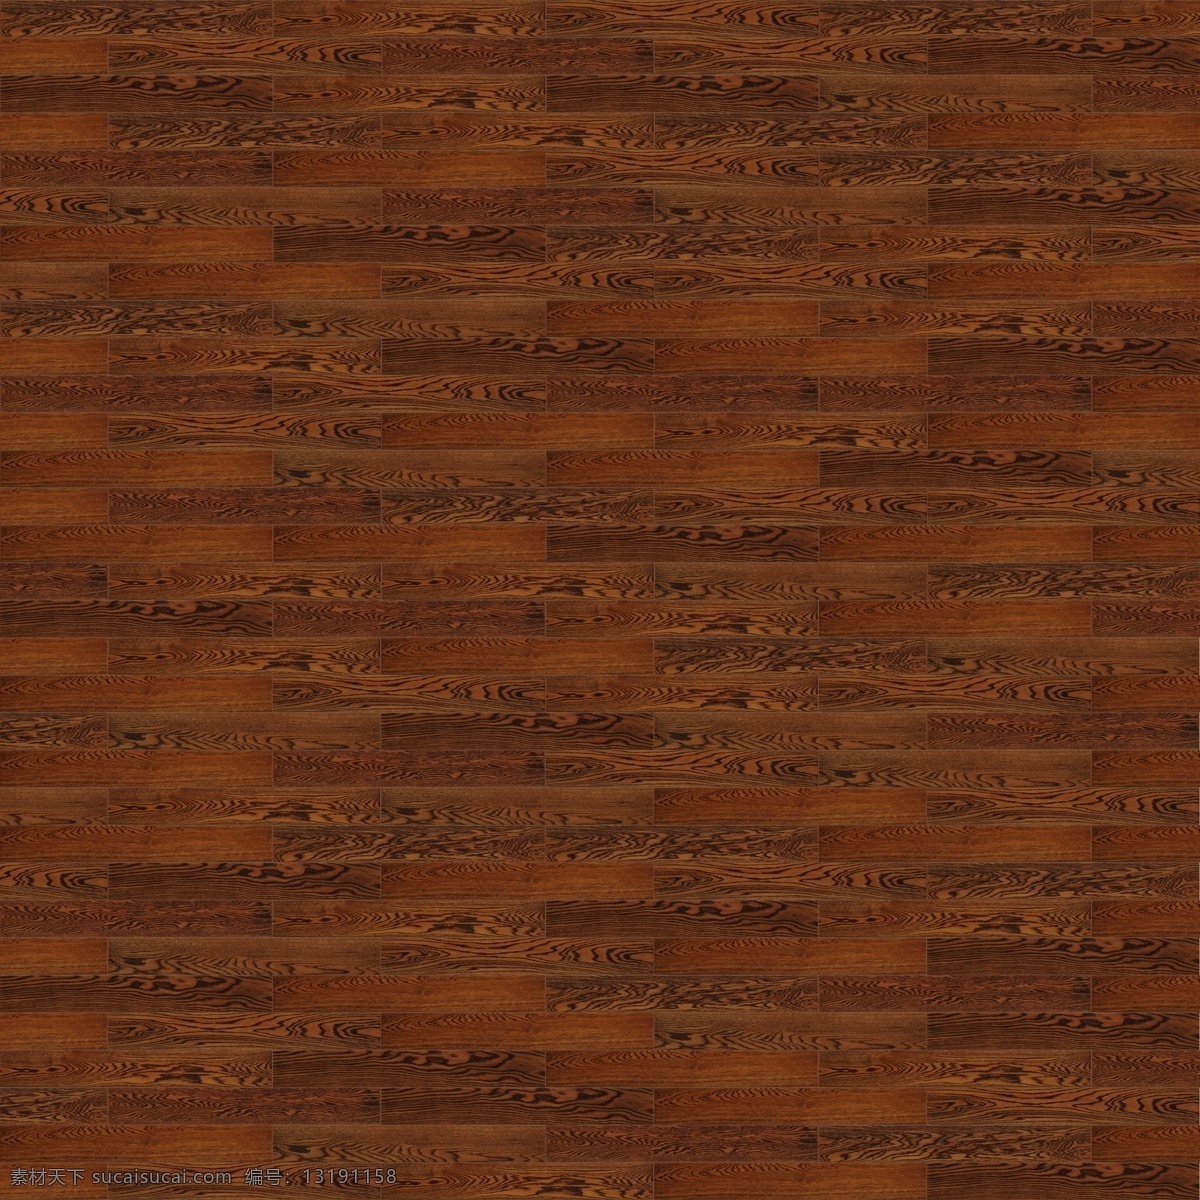 背景底纹 底纹边框 复古 高清 木地板 木地板贴图 木纹 贴图 设计素材 模板下载 家居装饰素材 室内设计